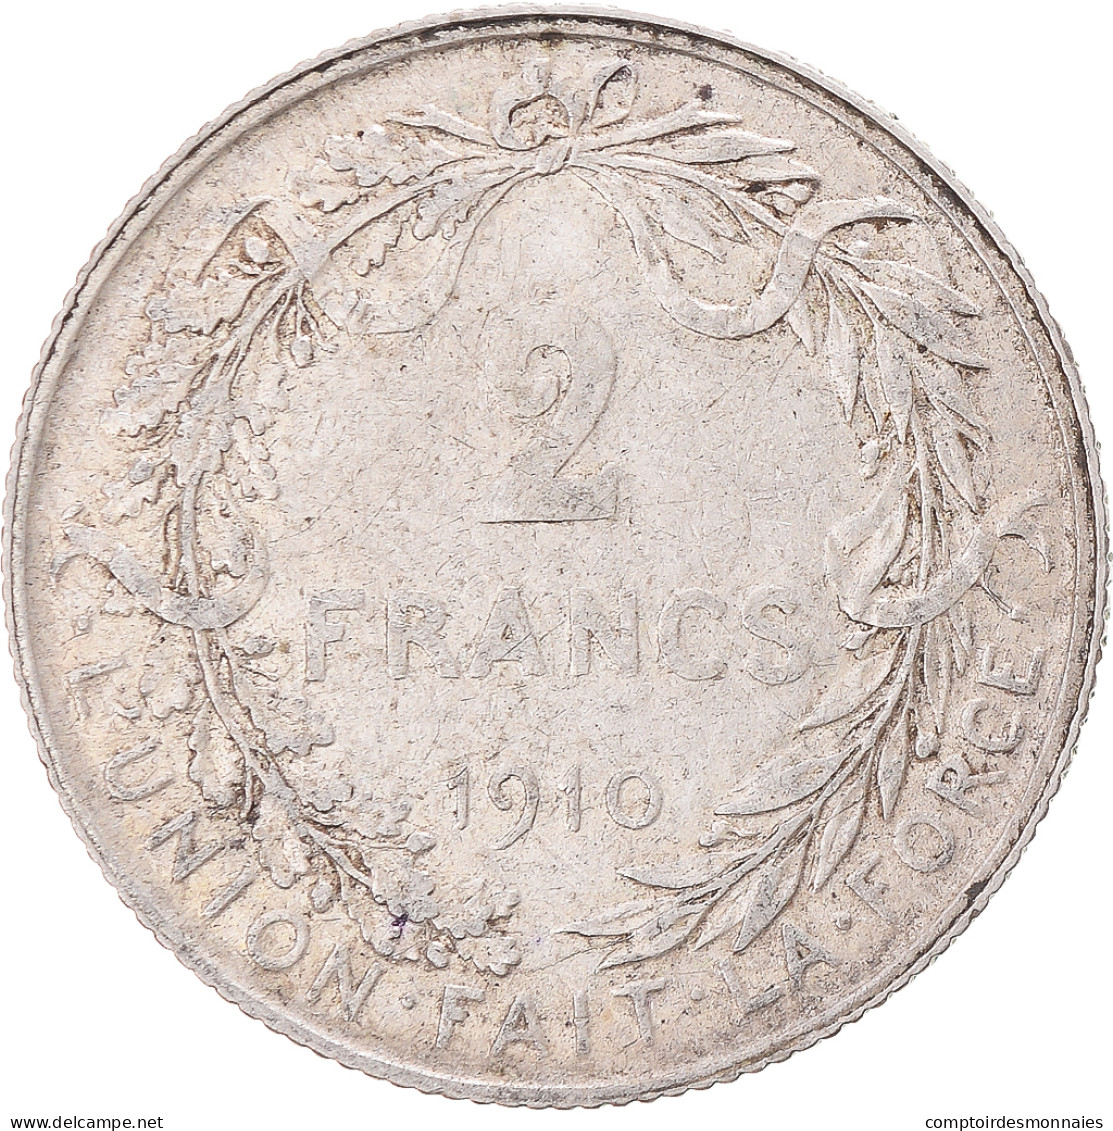 Monnaie, Belgique, 2 Francs, 2 Frank, 1910, TB+, Argent, KM:74 - 2 Frank